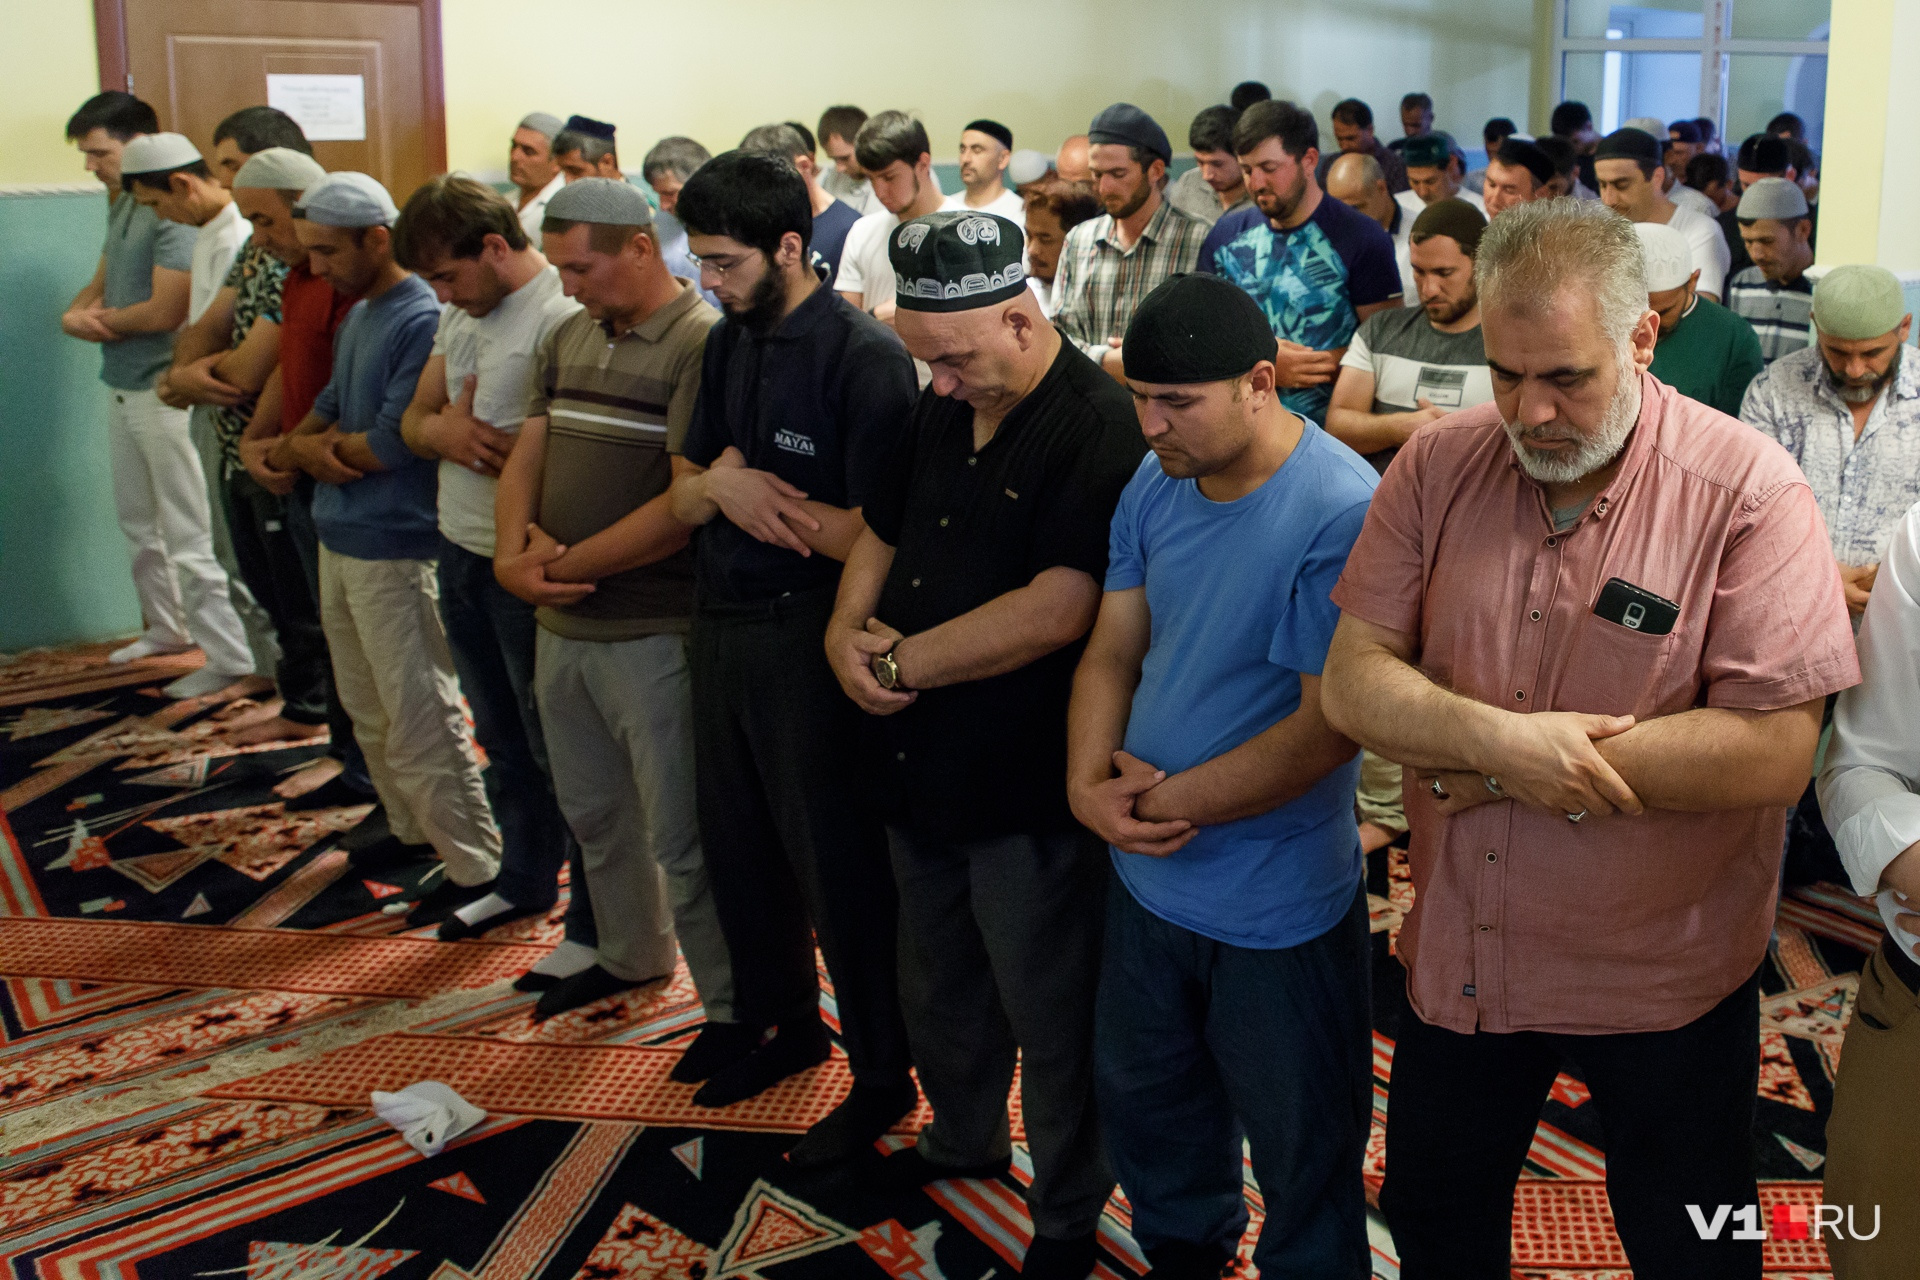 Ковры и место для молитвы ждут мусульман в любой мечети мира 